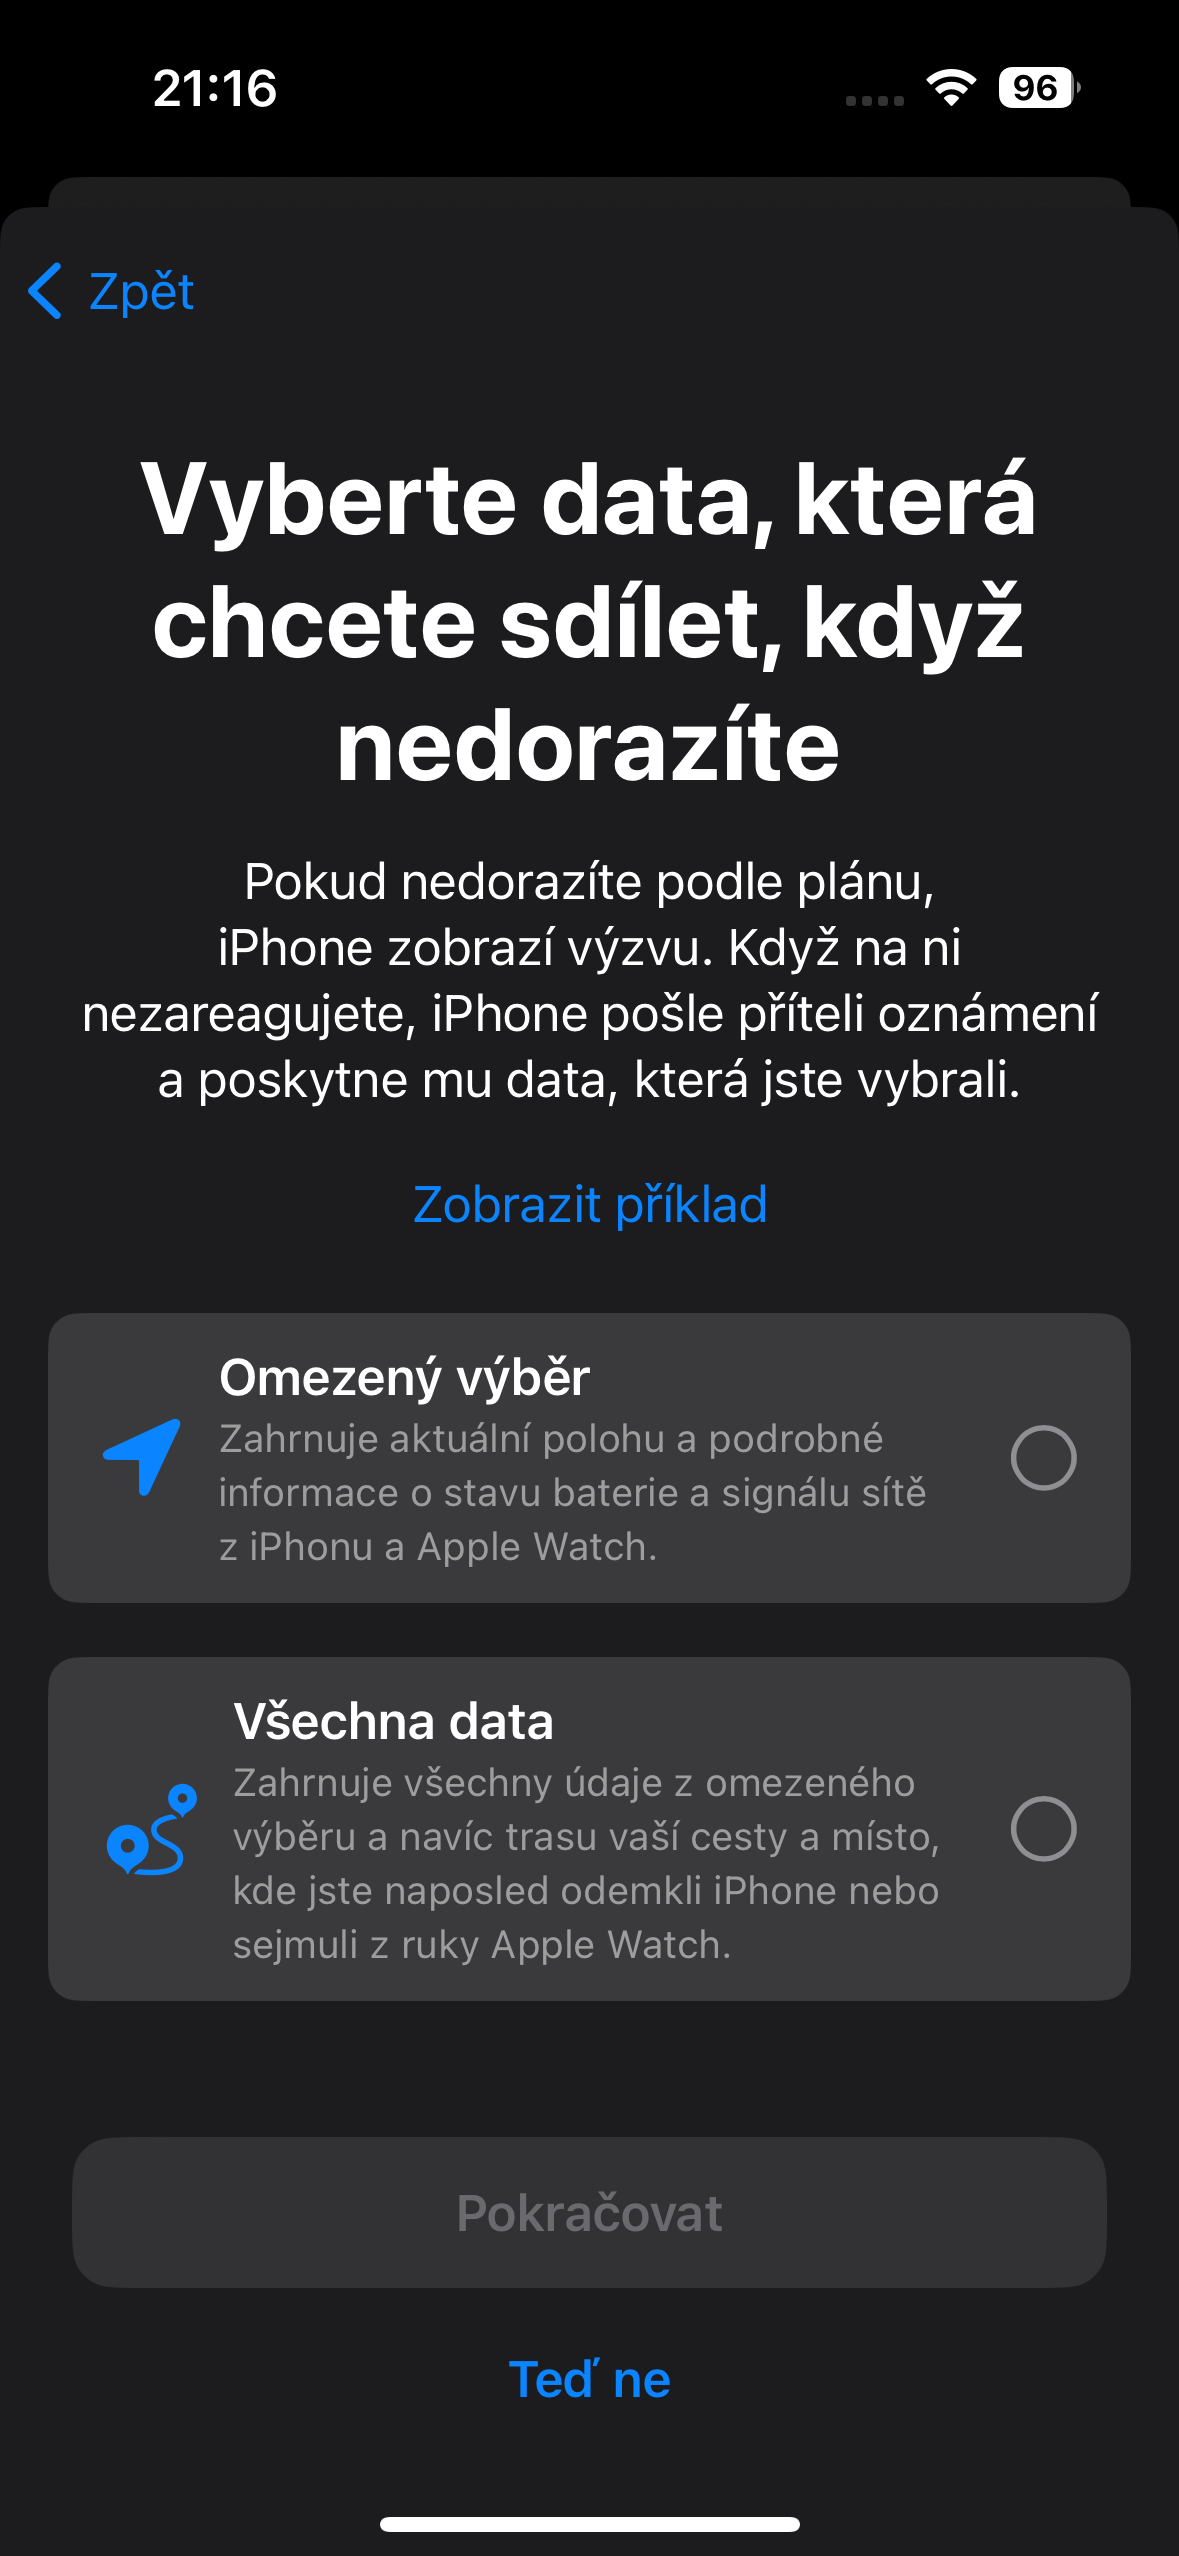 Doprovod mobilenet.cz radí